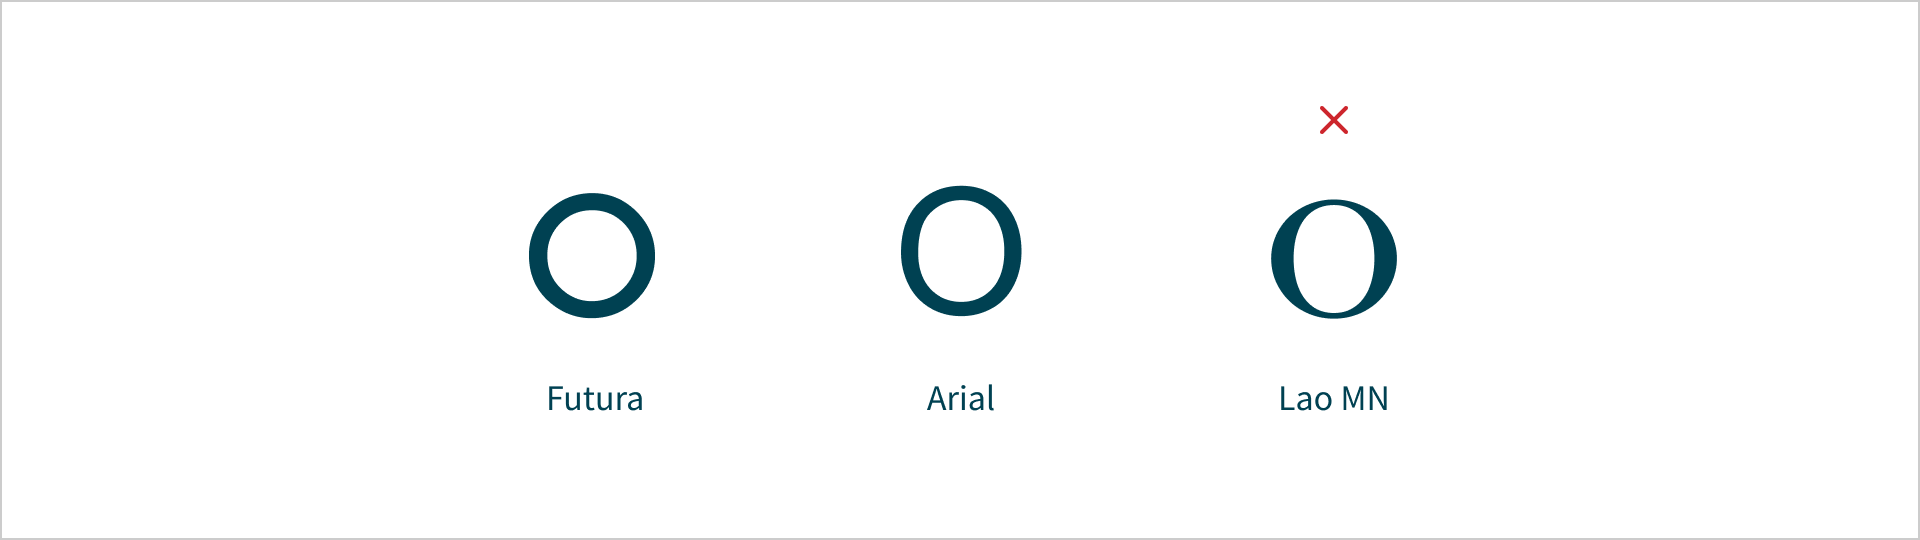 Afgebeeld is de letter 'o' met lettertypes Futura, Arial en Lao MN. Futura heeft een laag letter contrast, Arial heeft een gemiddeld letter contrast, Lao MN heeft een zeer hoog letter contrast. Bij het Lao MN voorbeeld staat een rood kruis.